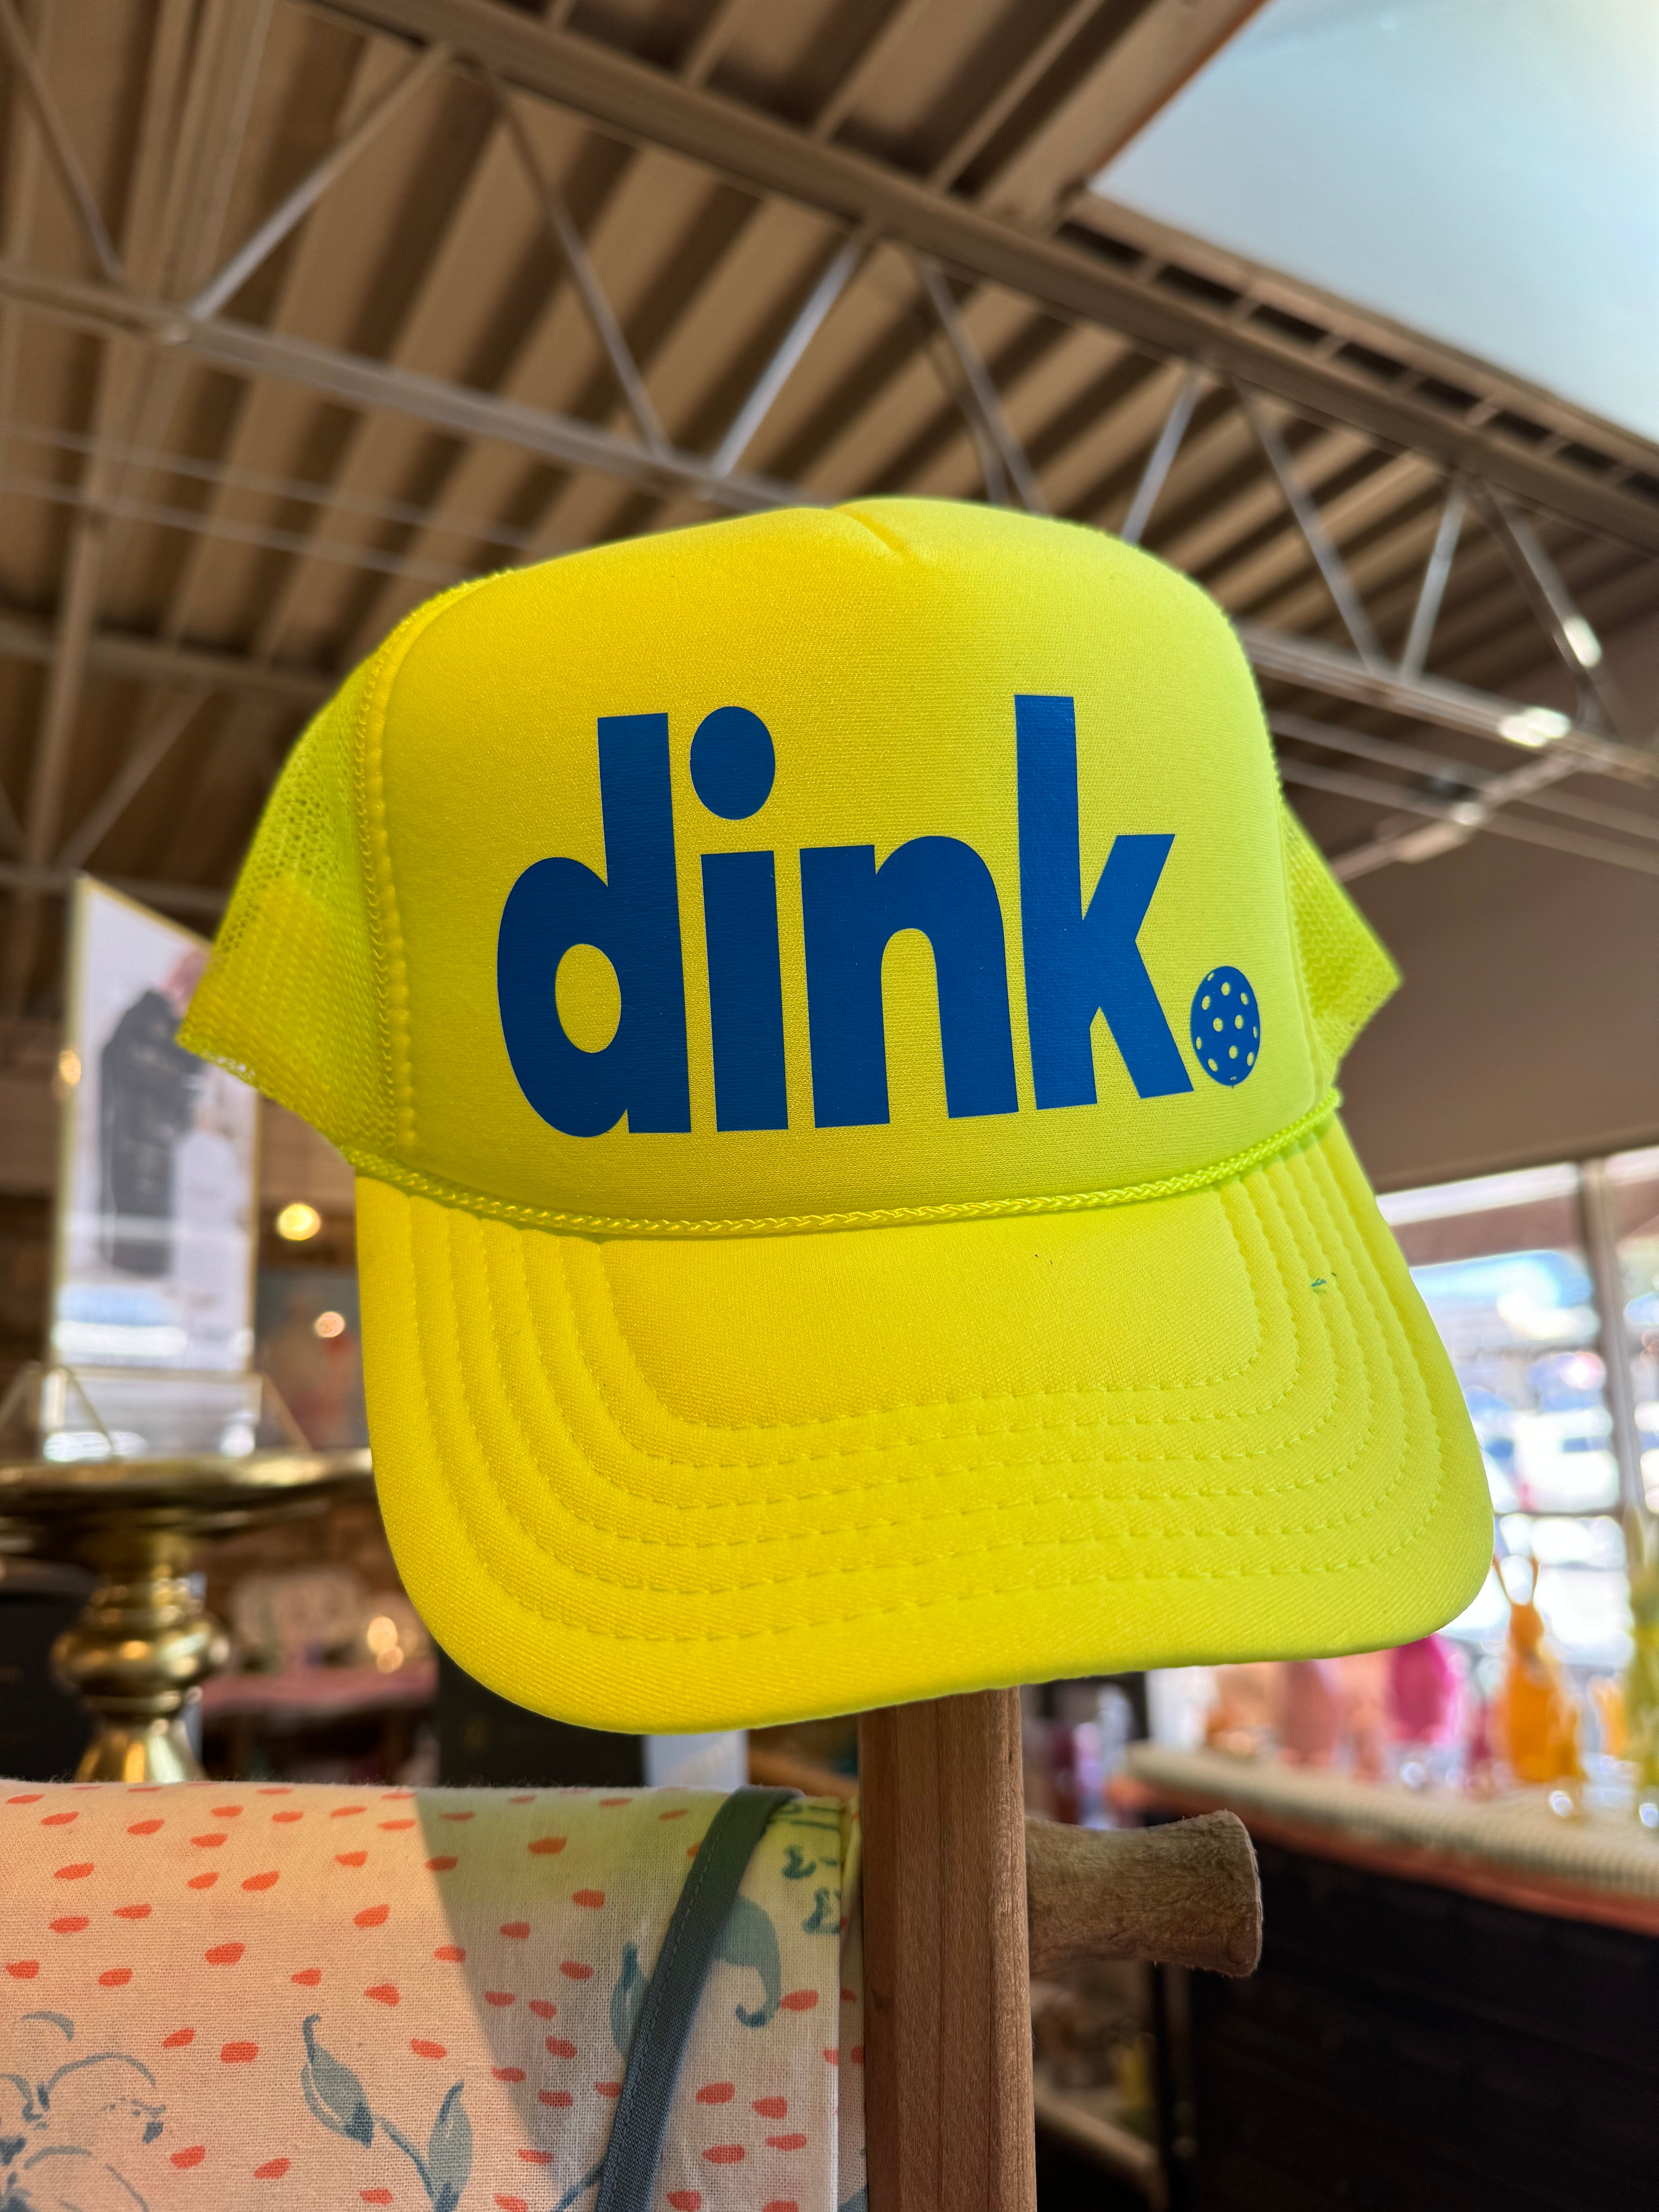 Dink Trucker Hat